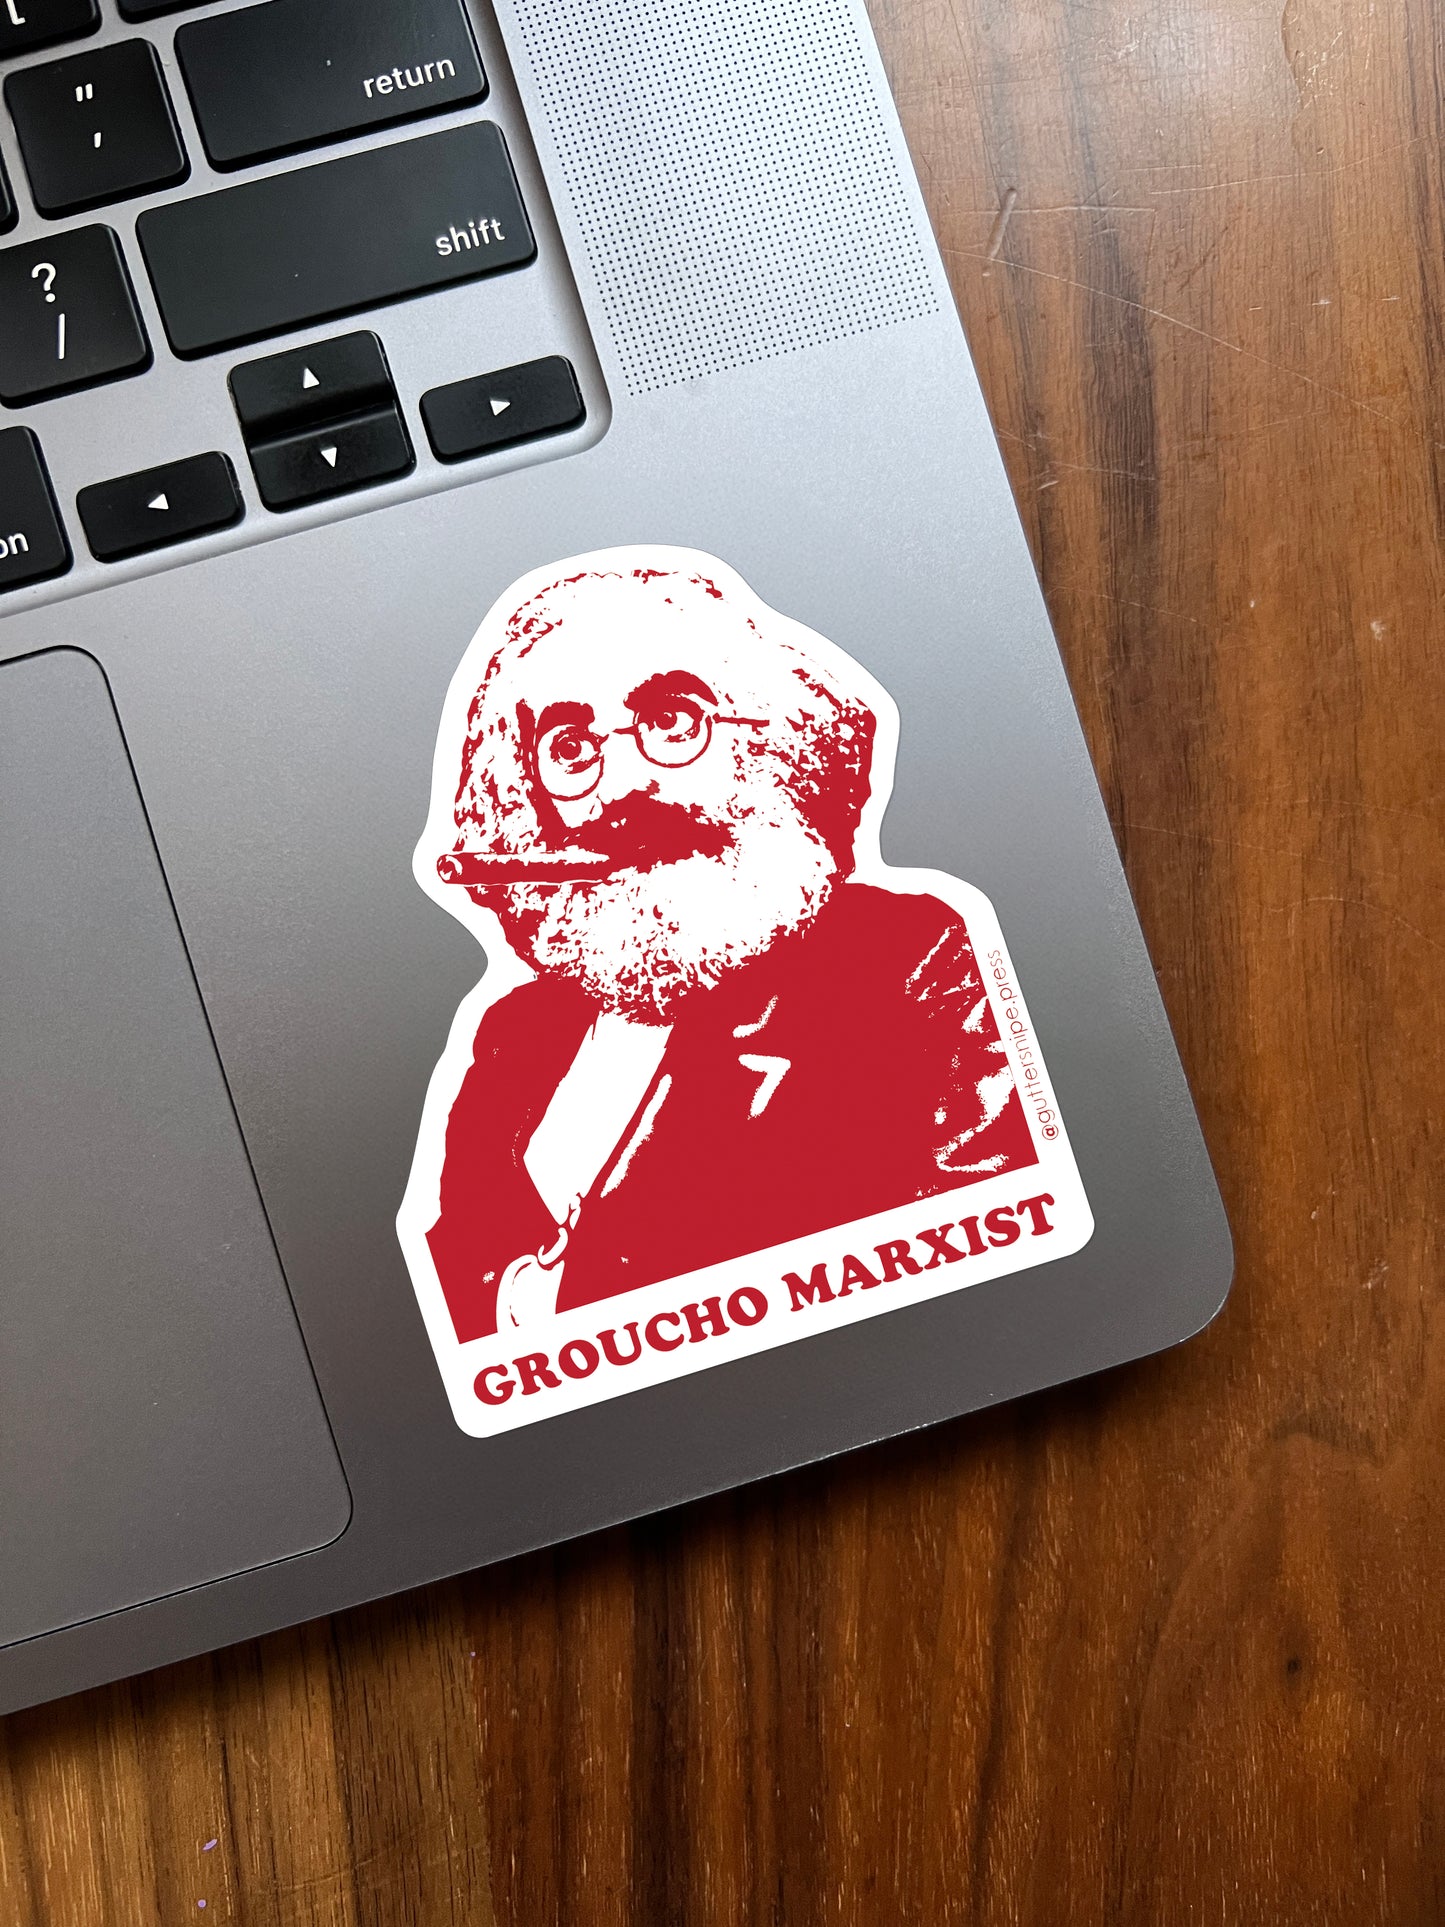 Groucho Marxist Sticker